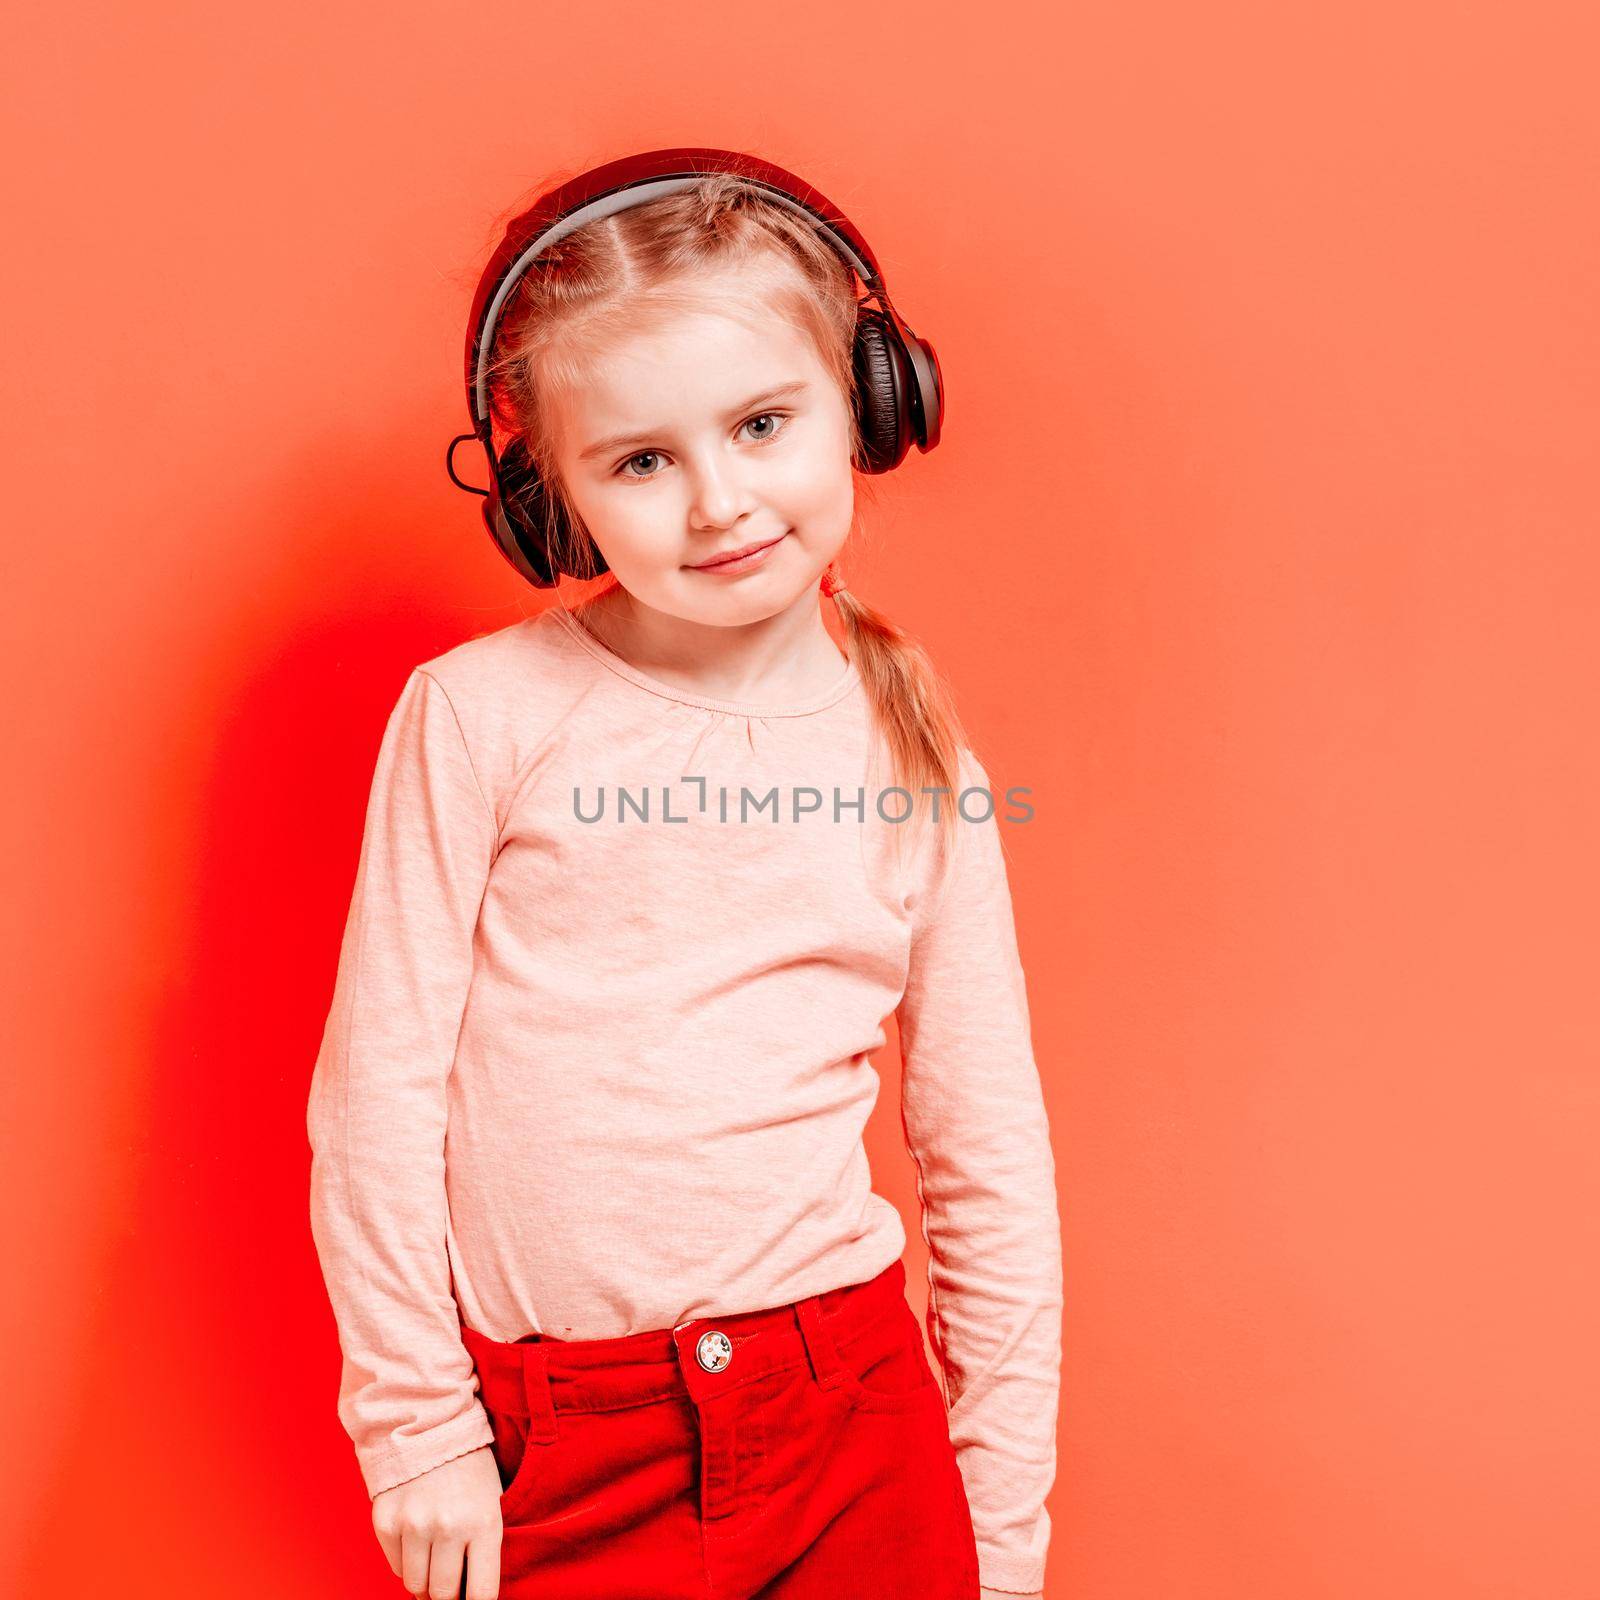 Little girl in headphones over rose background by tan4ikk1